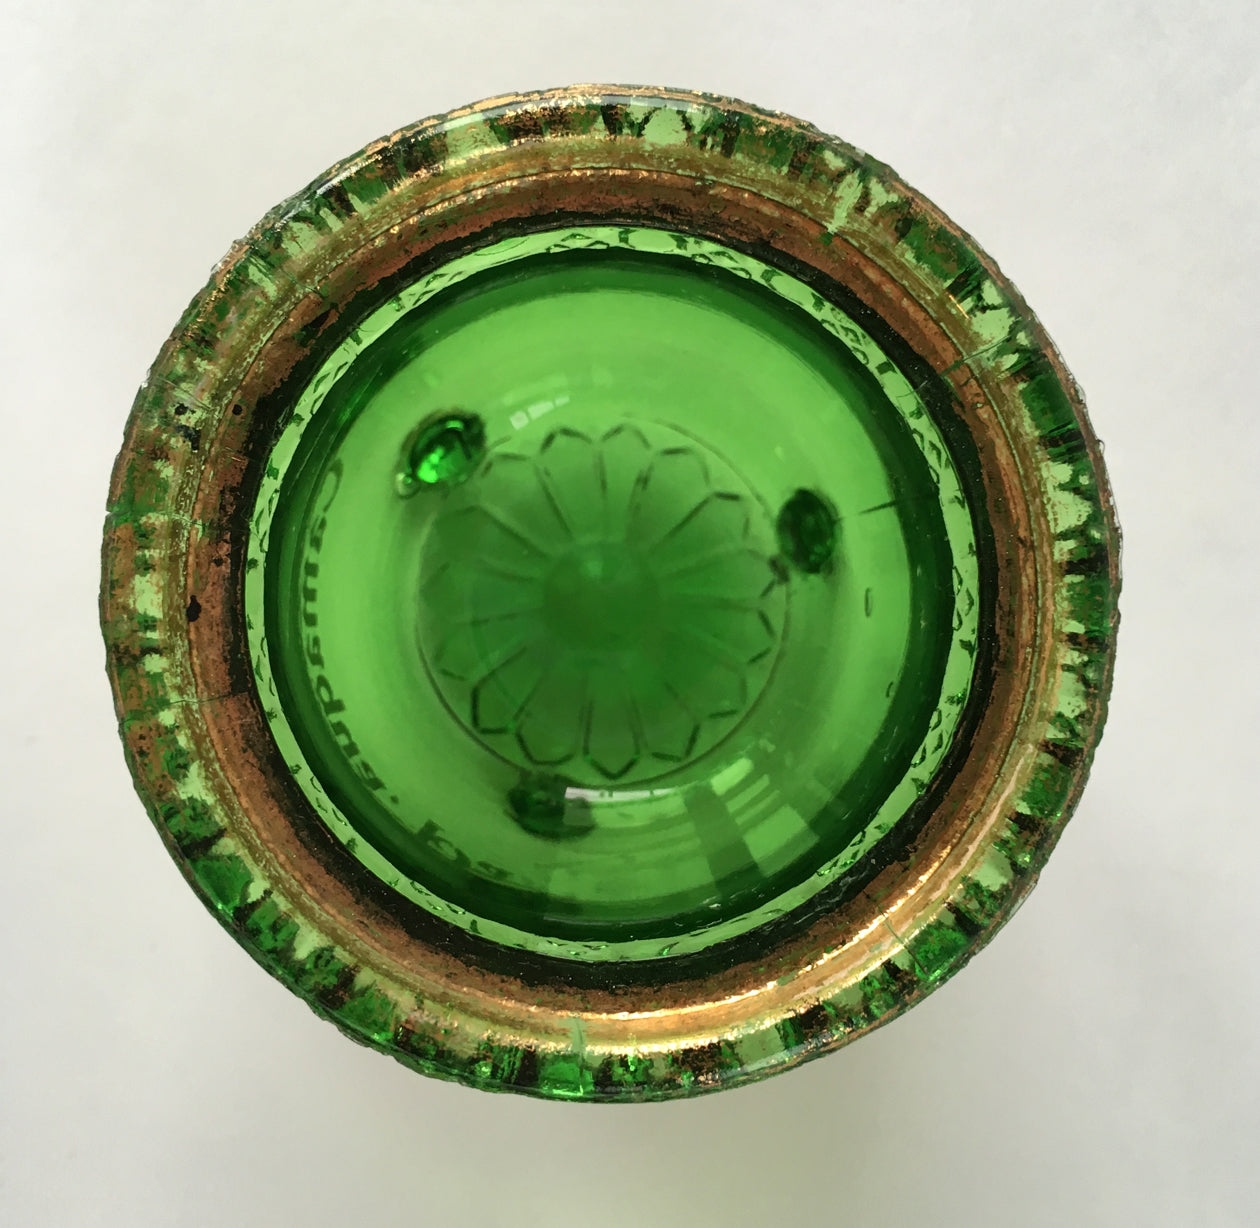 EAPG Witch's Kettle Green Glass Souvenir Toothpick Holder inside pot 2